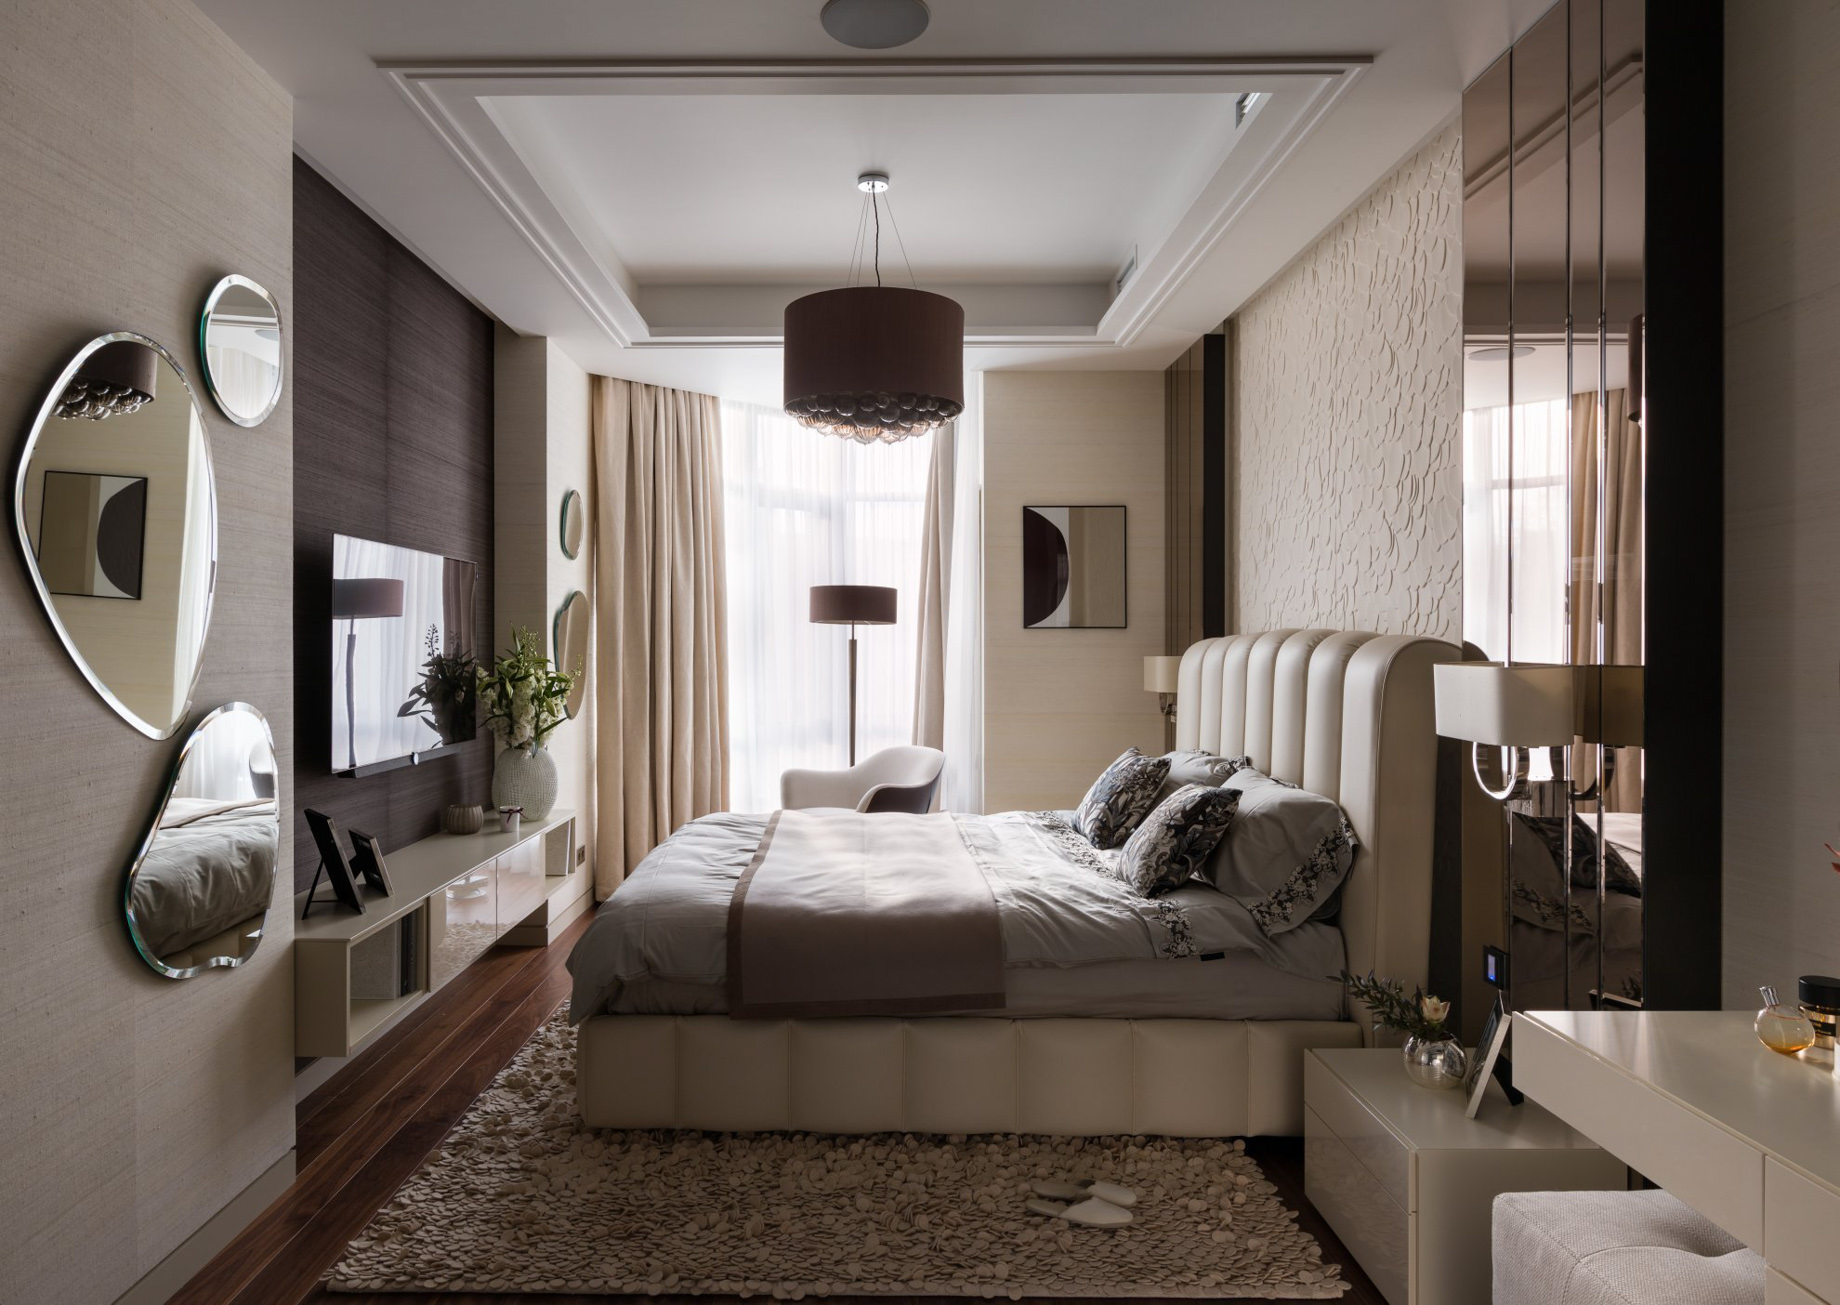 Pecher SKY Apartment Interior Design Kyiv, Ukraine – Nataly Bolshakova